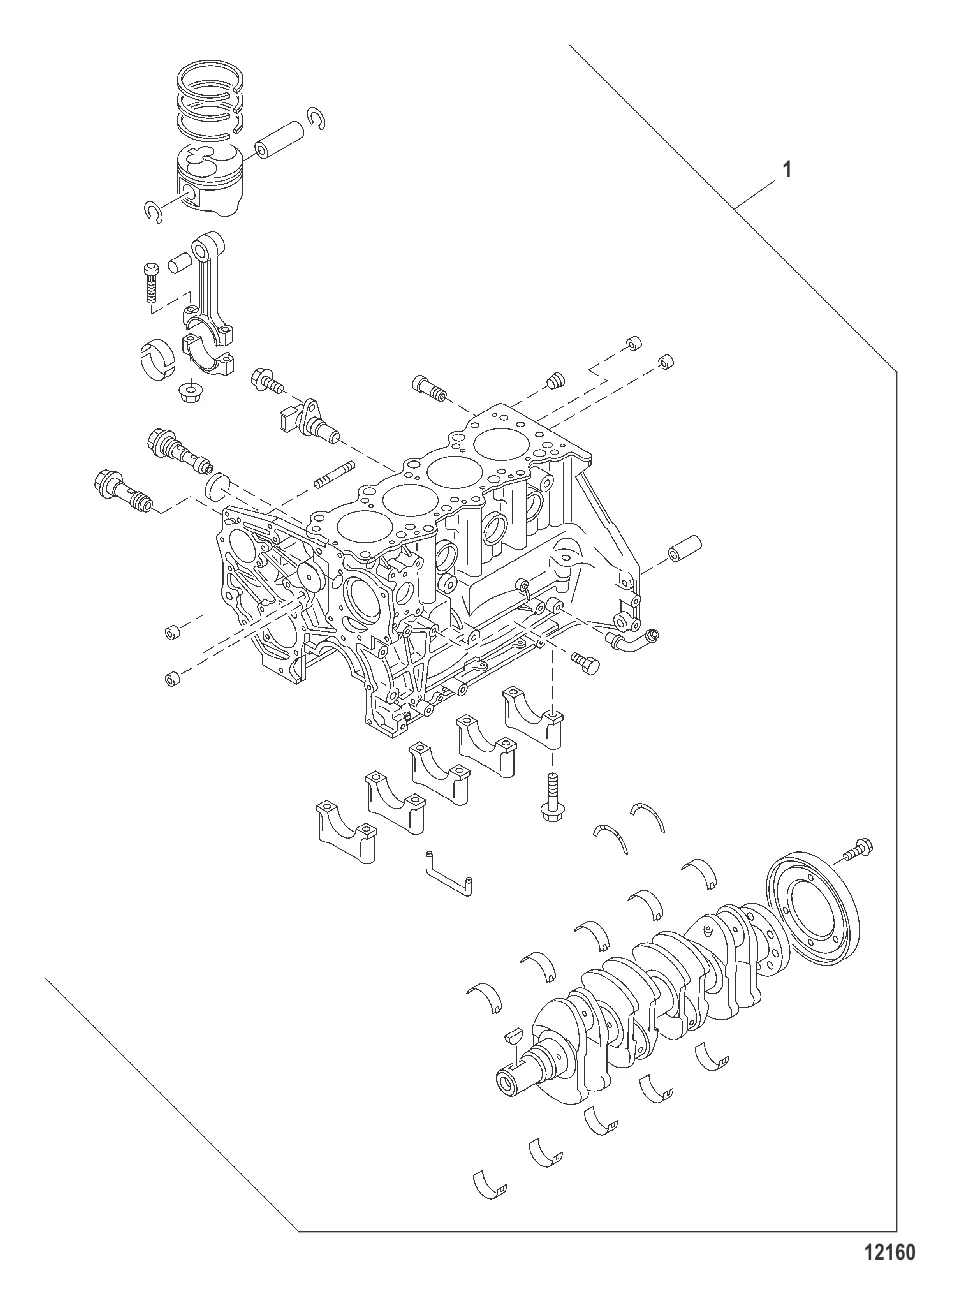 Комплект для технического обслуживания – частичная сборка двигателя